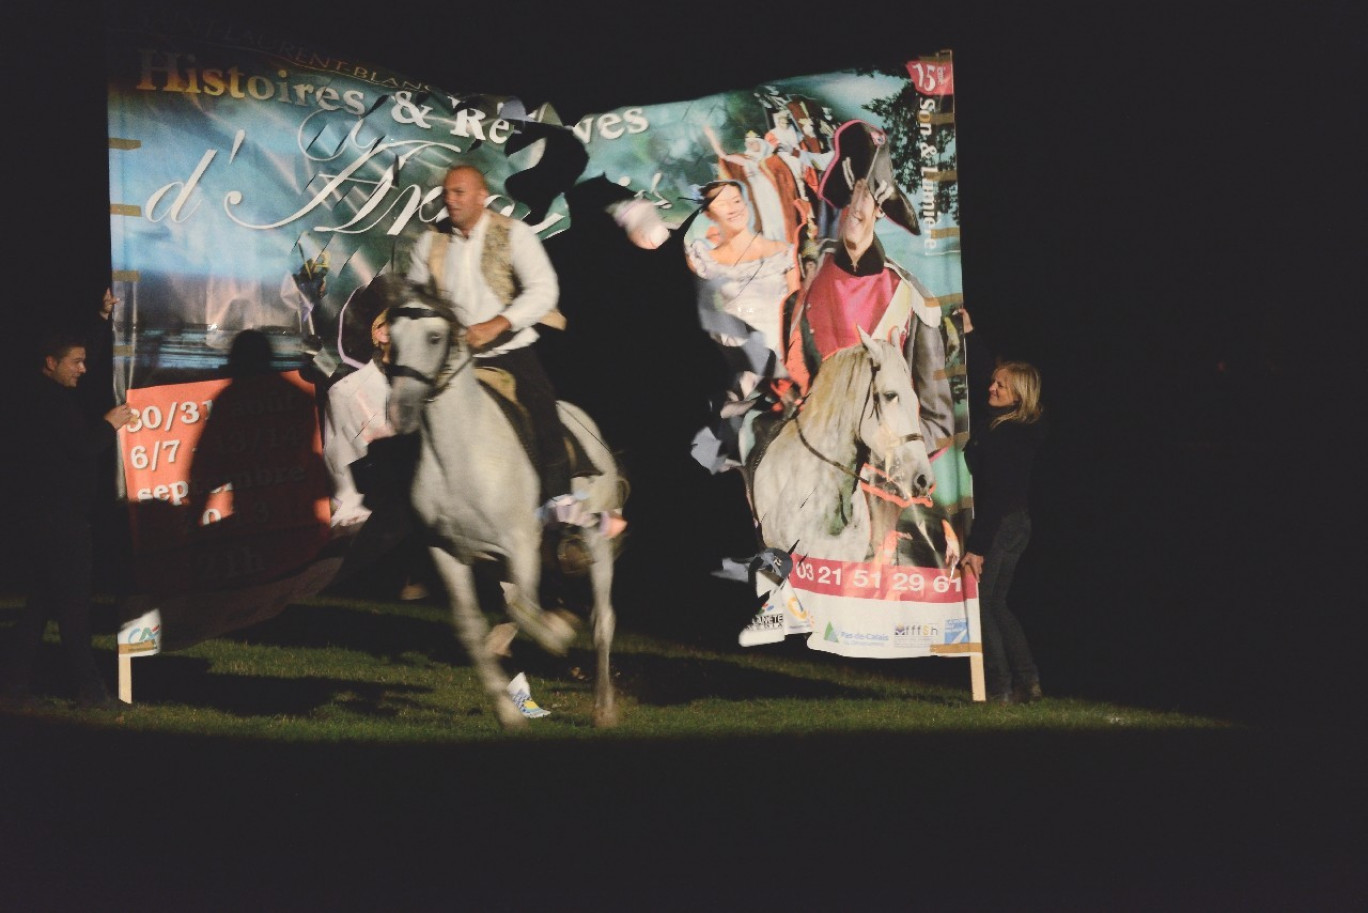 L’une des scènes marquantes : le cheval Cador qui est la propriété de l’Association, transperce en fin de show l’affiche géante du son et lumière Histoires &amp; Rêves d’Artois. 